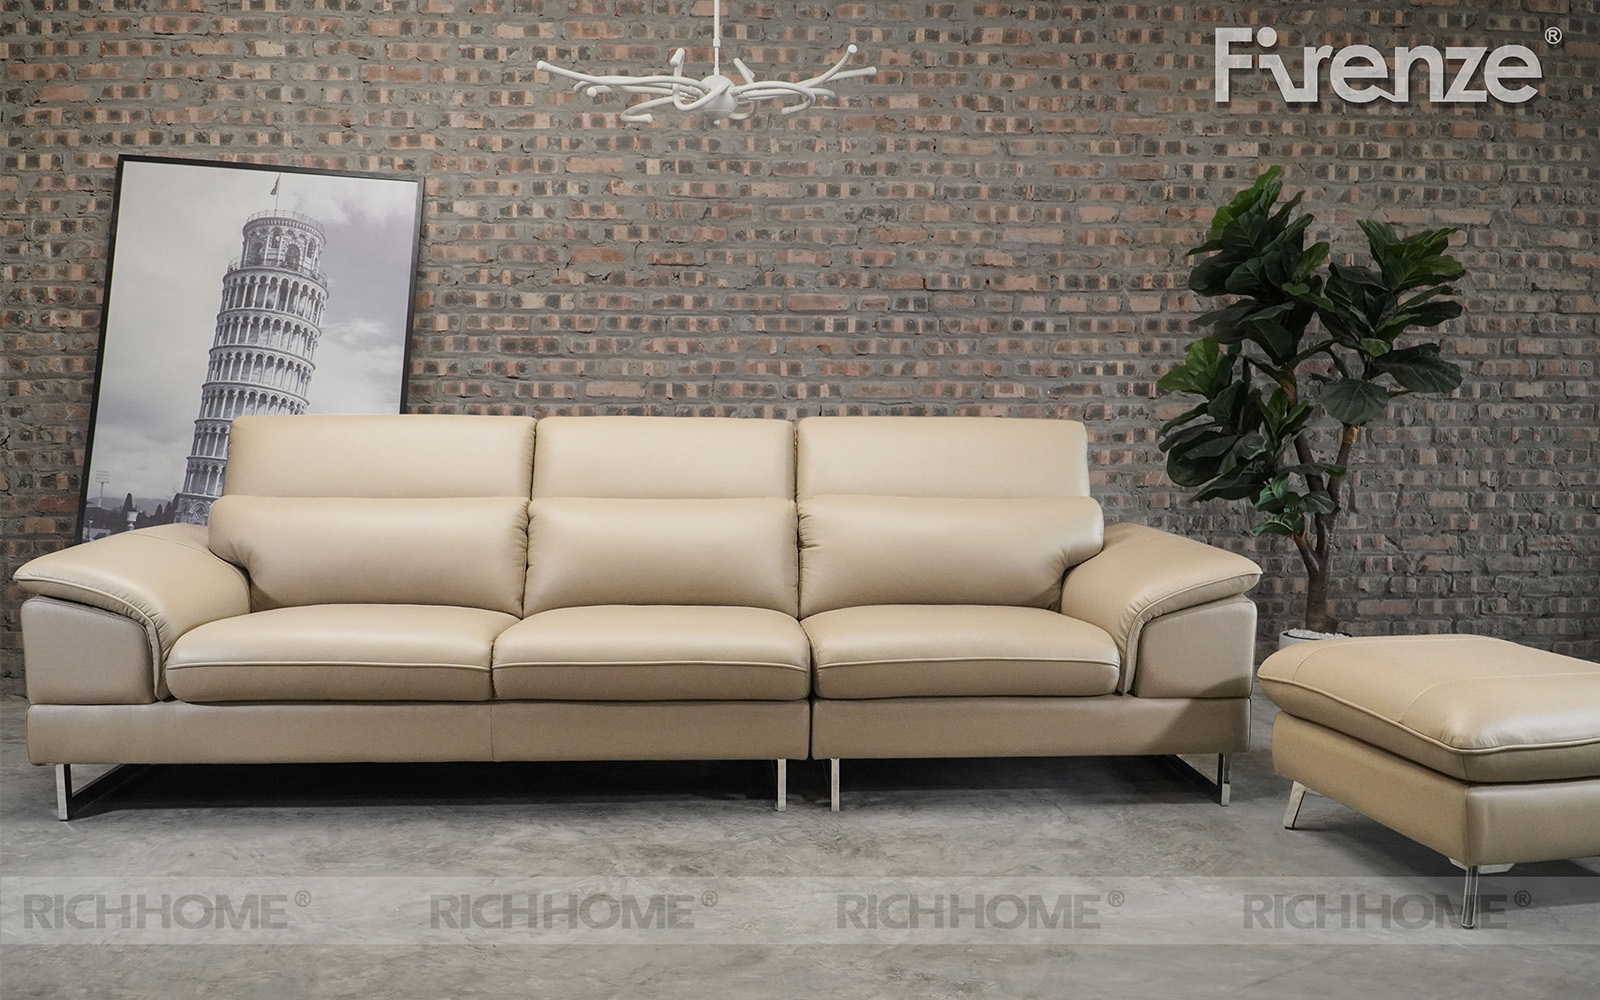 Top ghế sofa màu sáng nhẹ thiết kế hiện đại trẻ trung - Ảnh 4